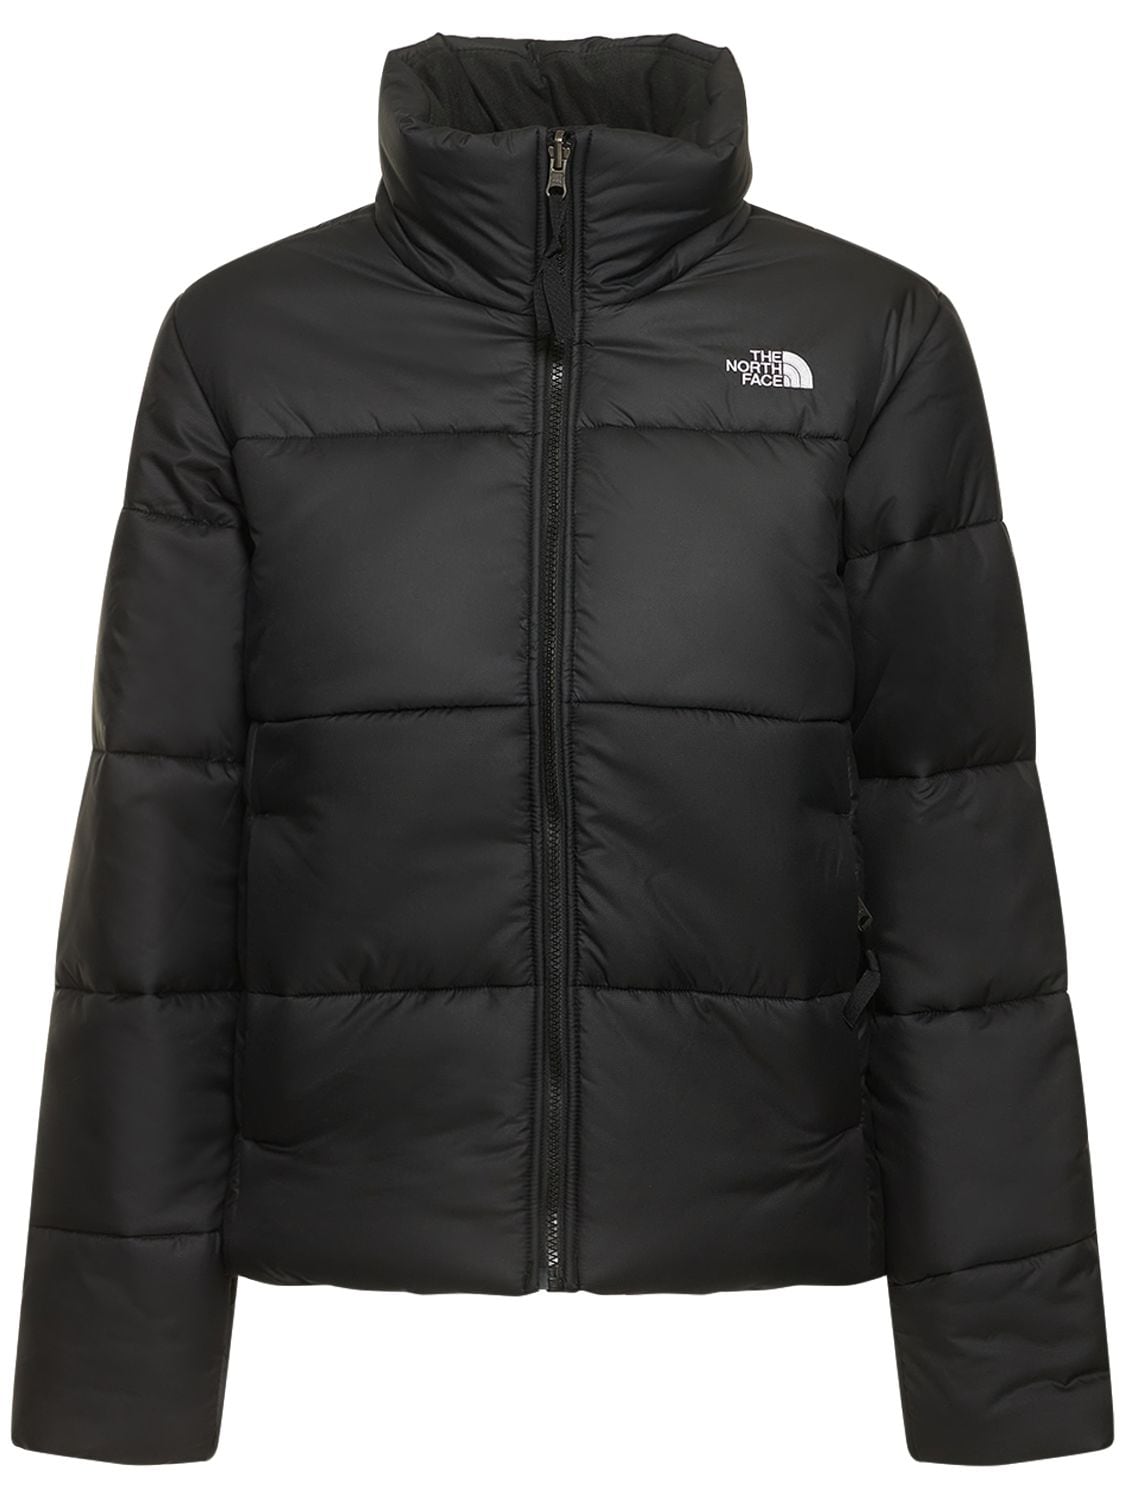 The North Face - Saikuru puffer jacket - Black | Luisaviaroma